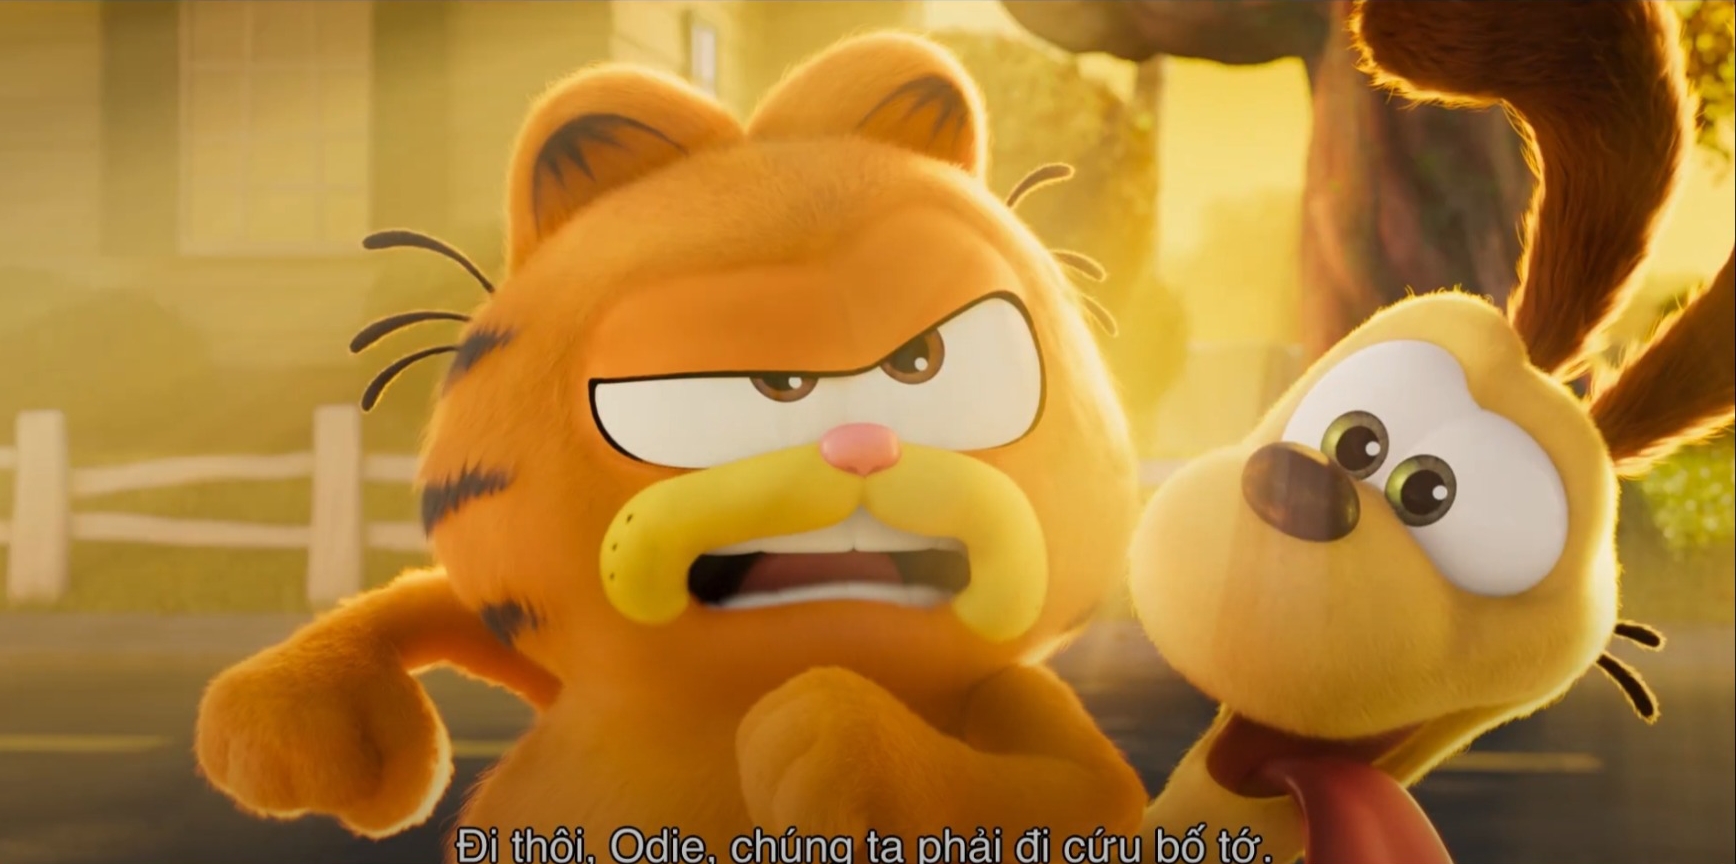 Mèo Béo Garfield tung trailer mới nhất, ấn định ngày ra rạp - ảnh 11